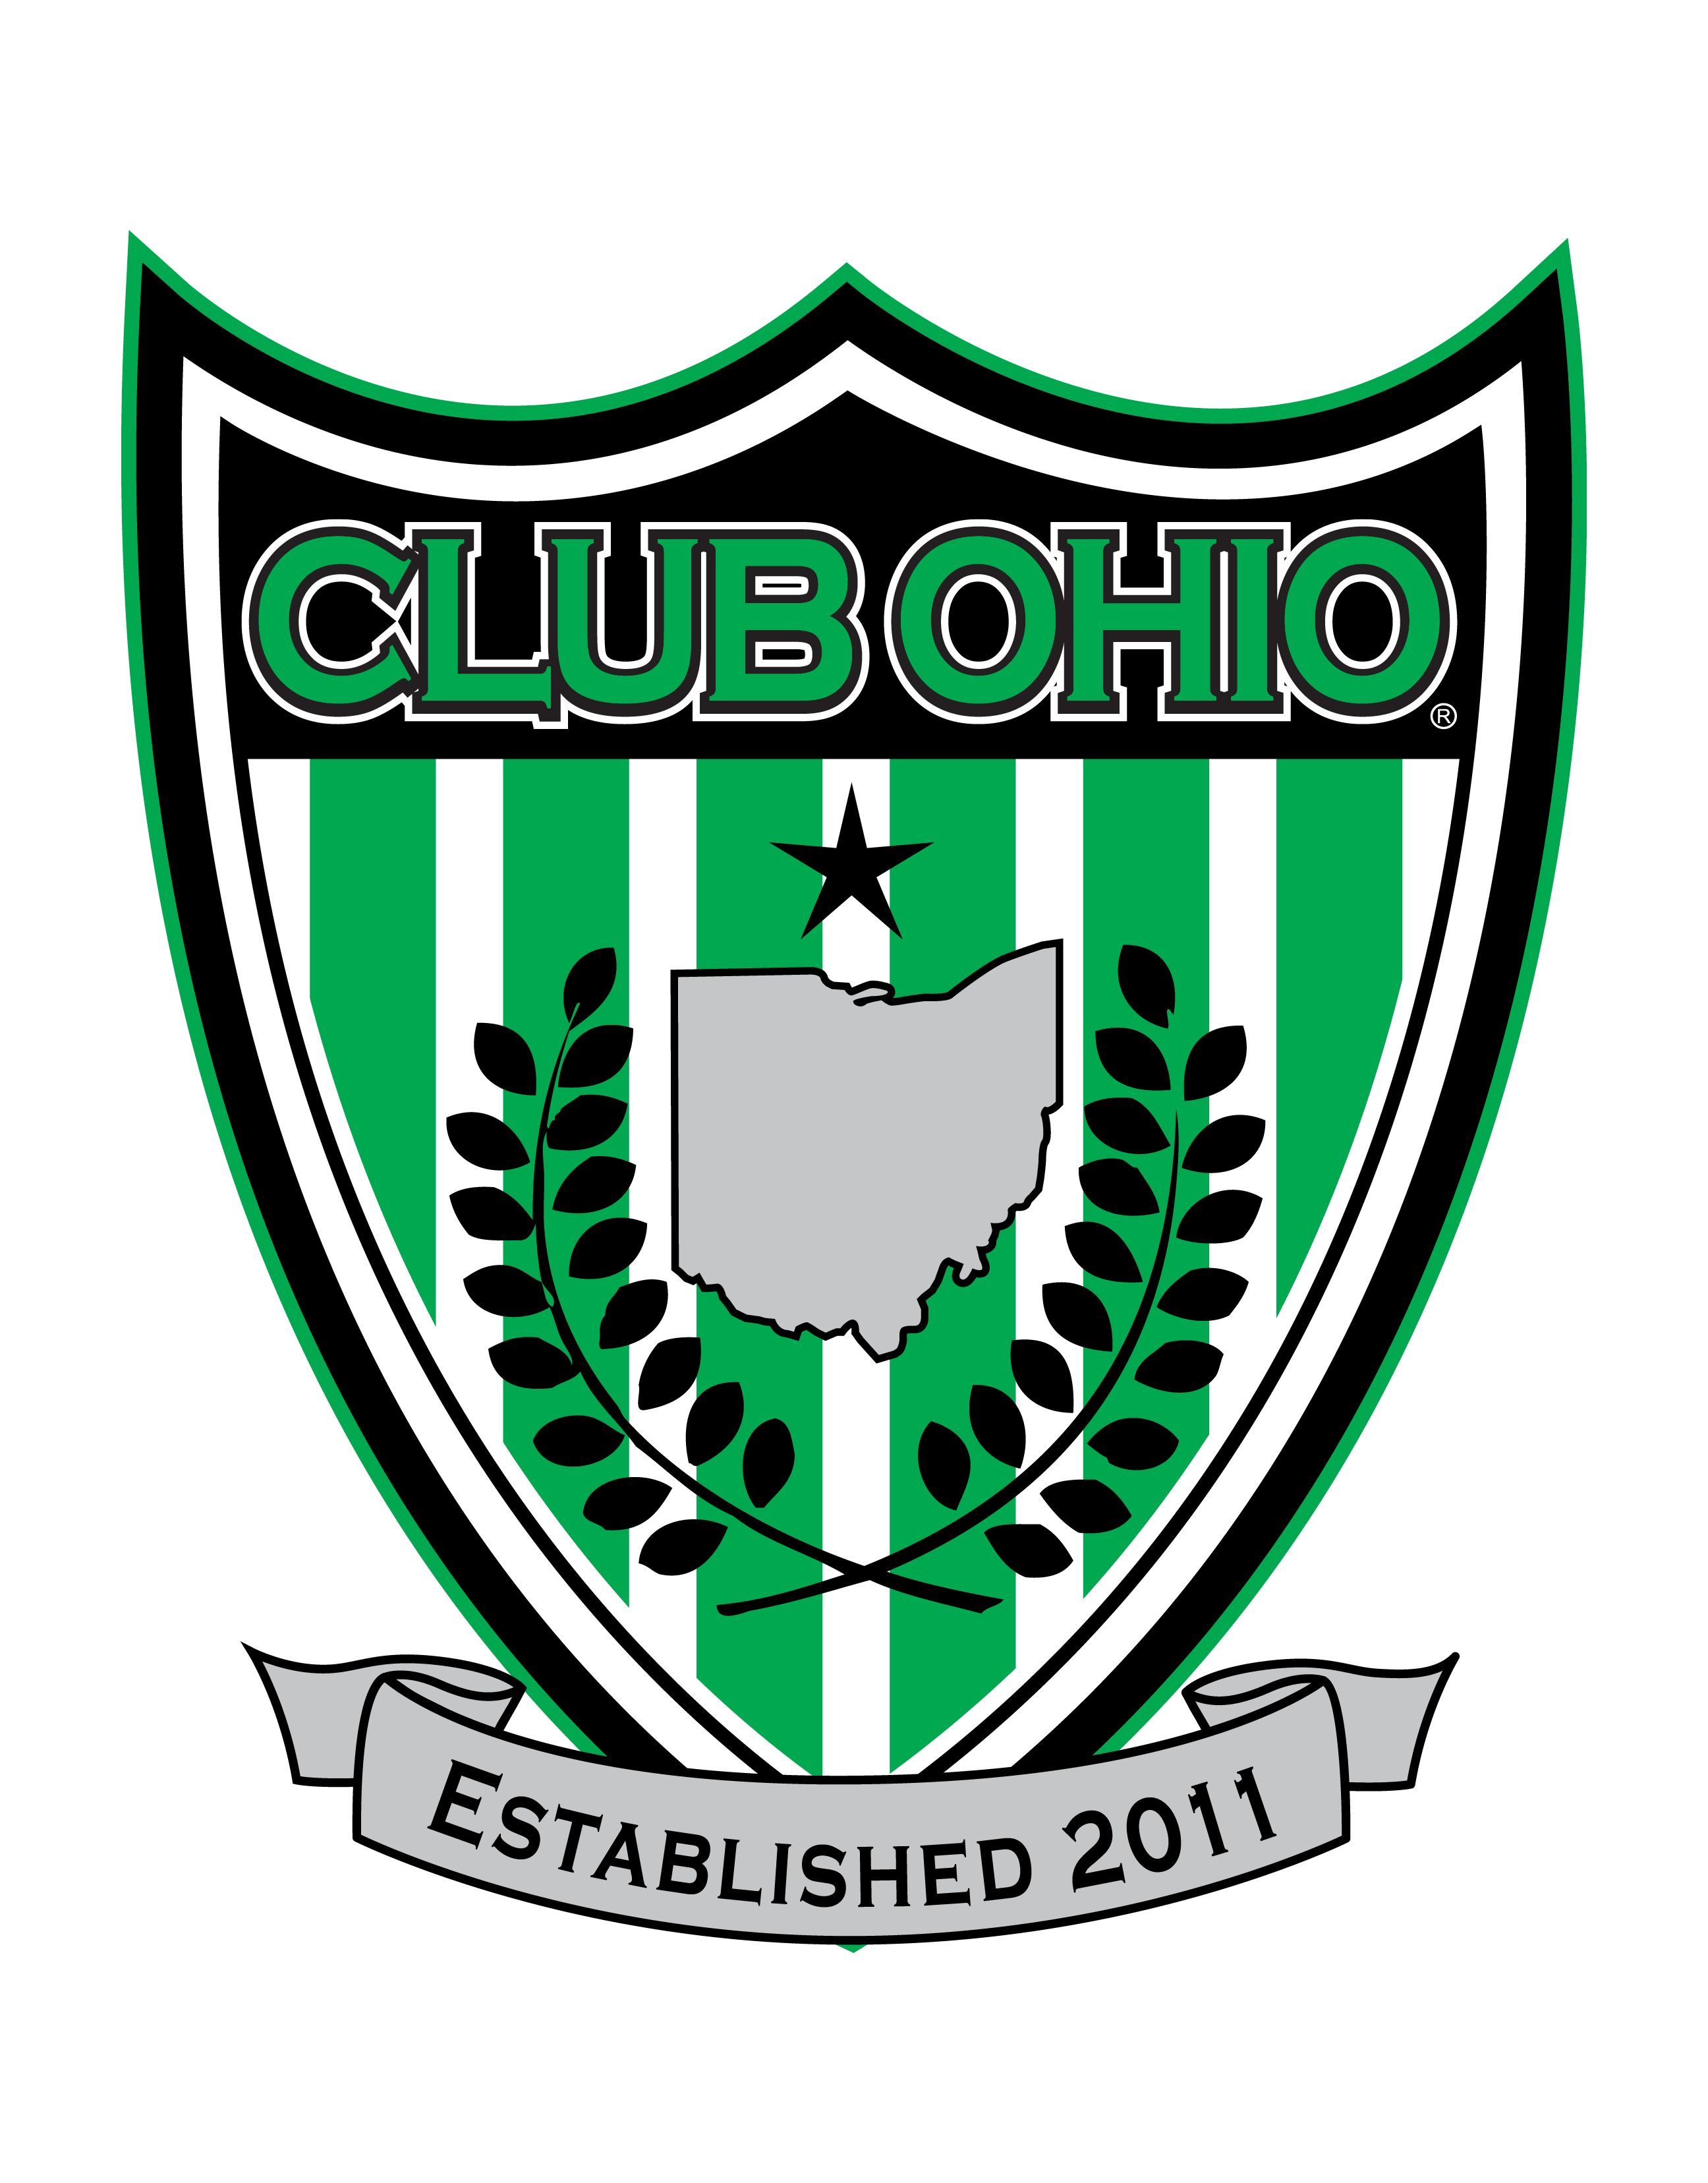 Club Ohio East Shield